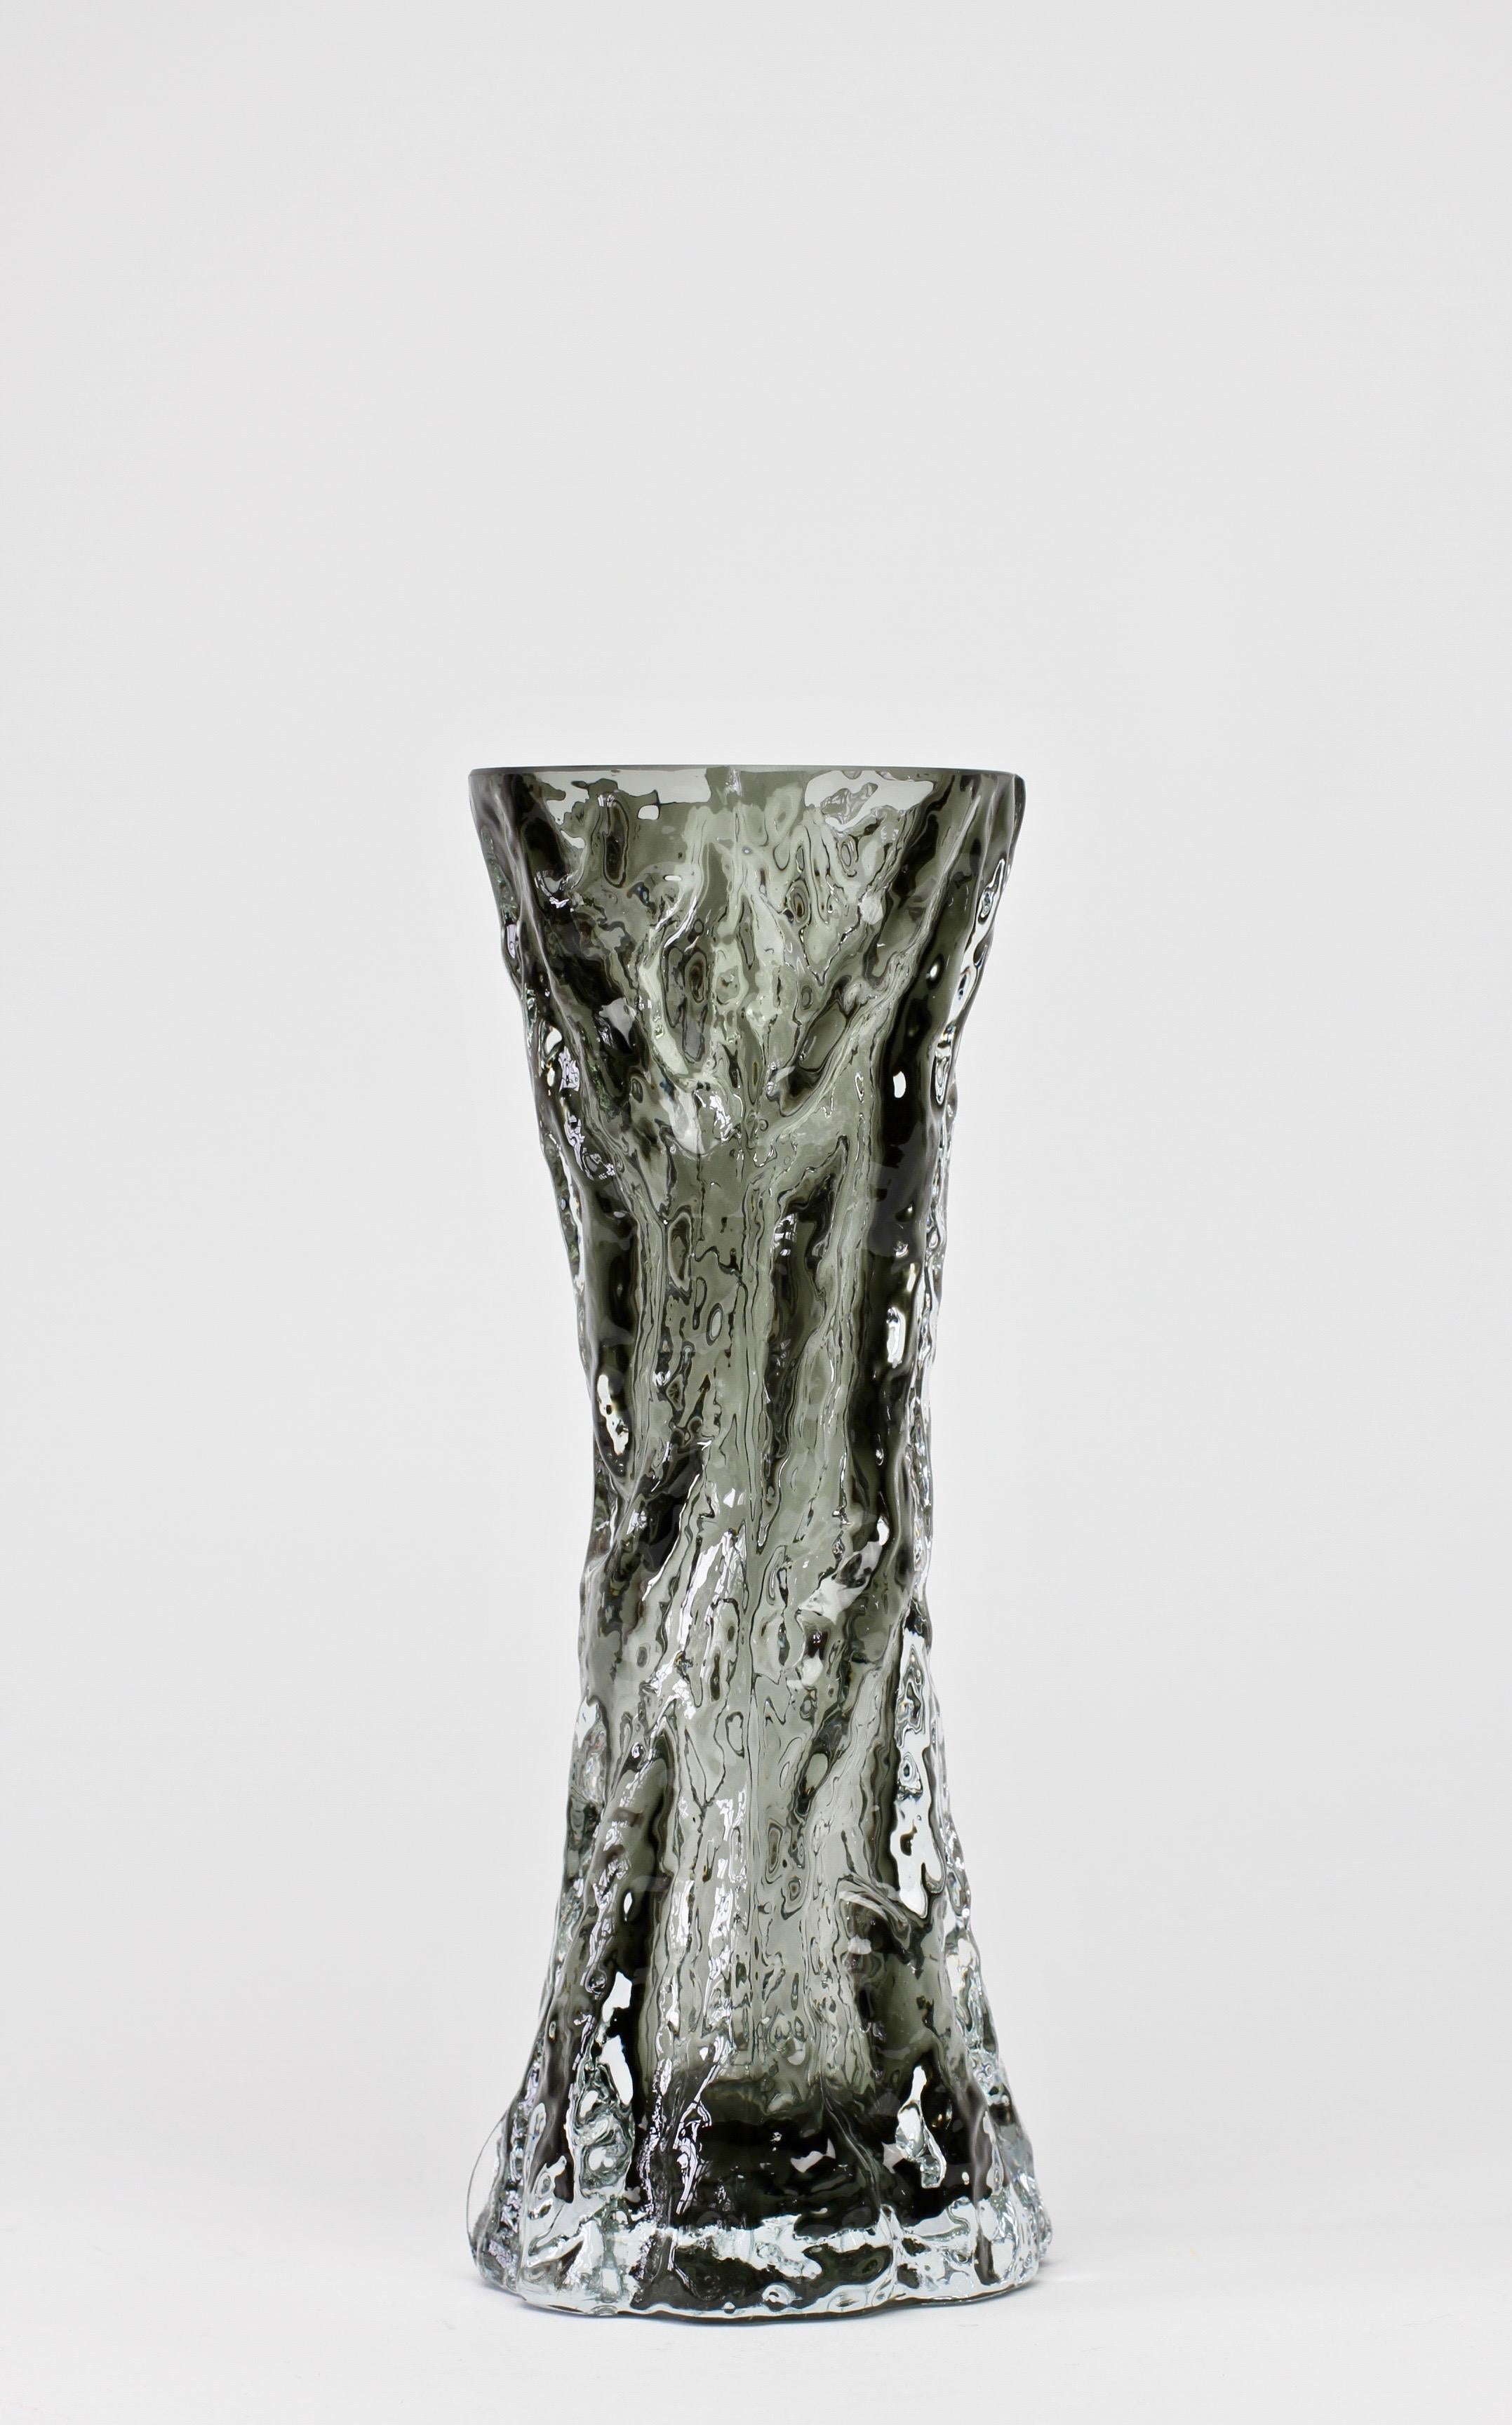 Merveilleux vase en verre texturé allemand du milieu du siècle dernier par Ingrid Glas:: vers 1970. Ce magnifique vase apporte une touche d'amusement et de fantaisie à n'importe quelle pièce avec sa forme fantaisiste d'écorce d'arbre capturée dans